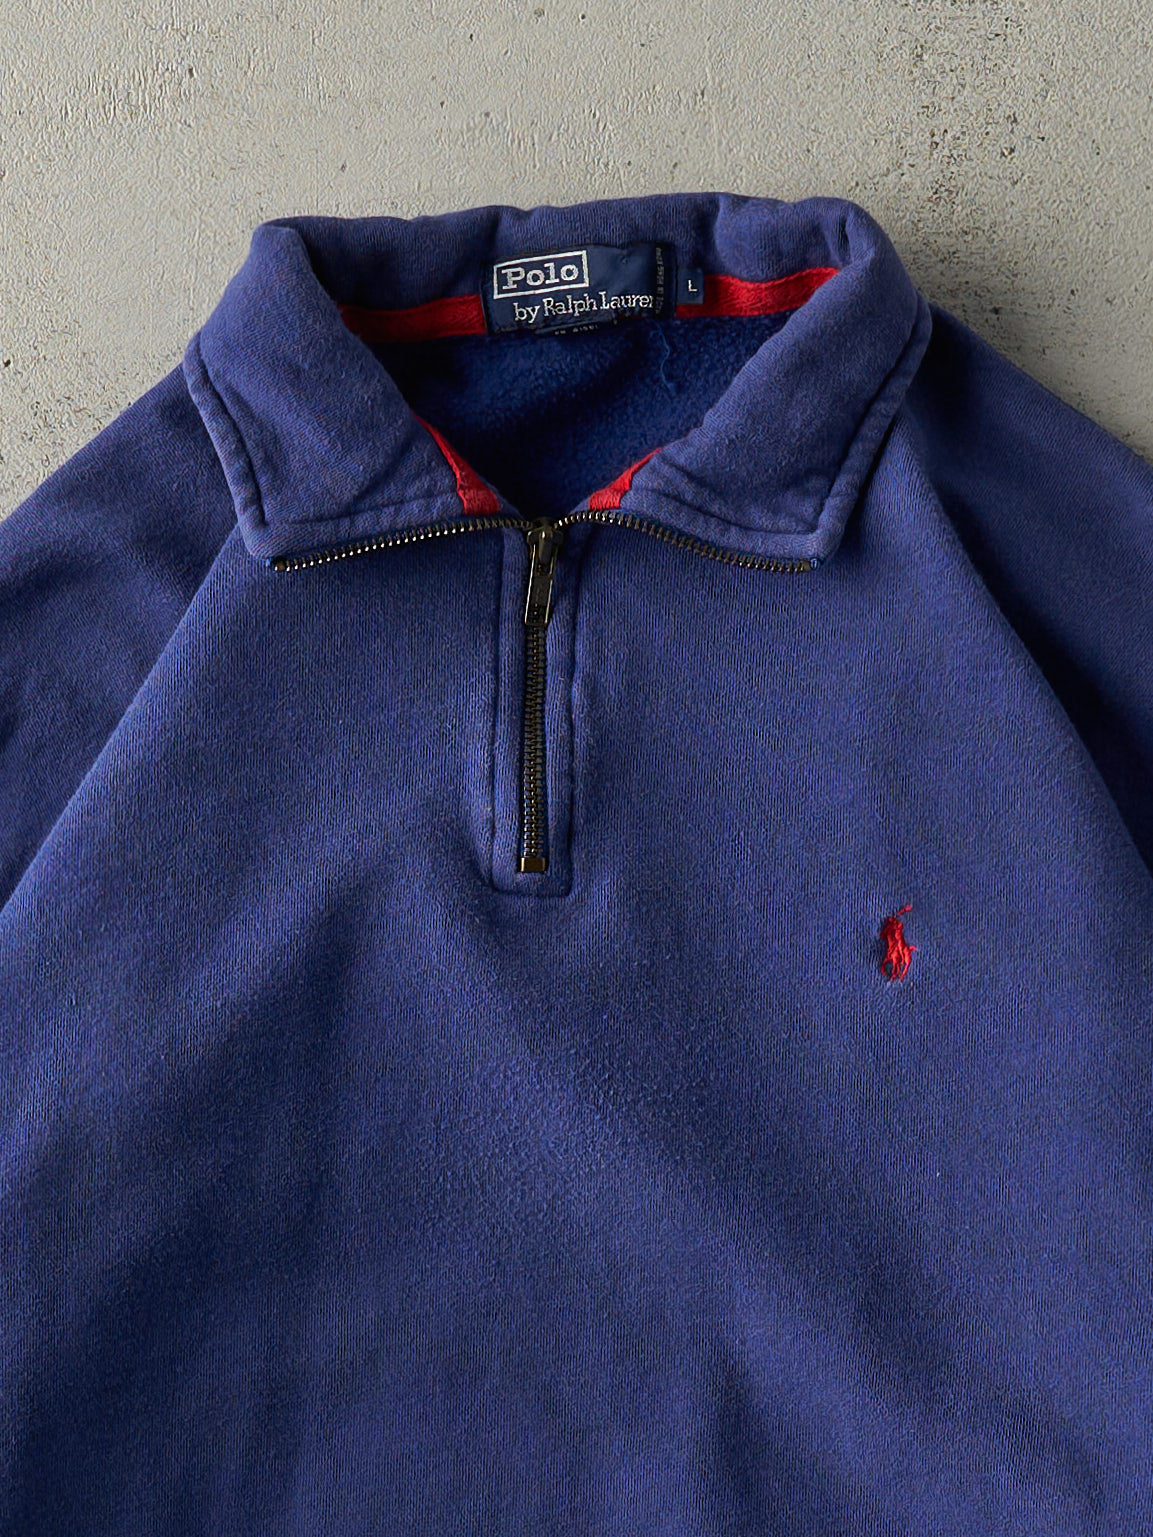 Vintage 90s Royal Blue Polo Ralph Lauren Quarter Zip Sweater (L)